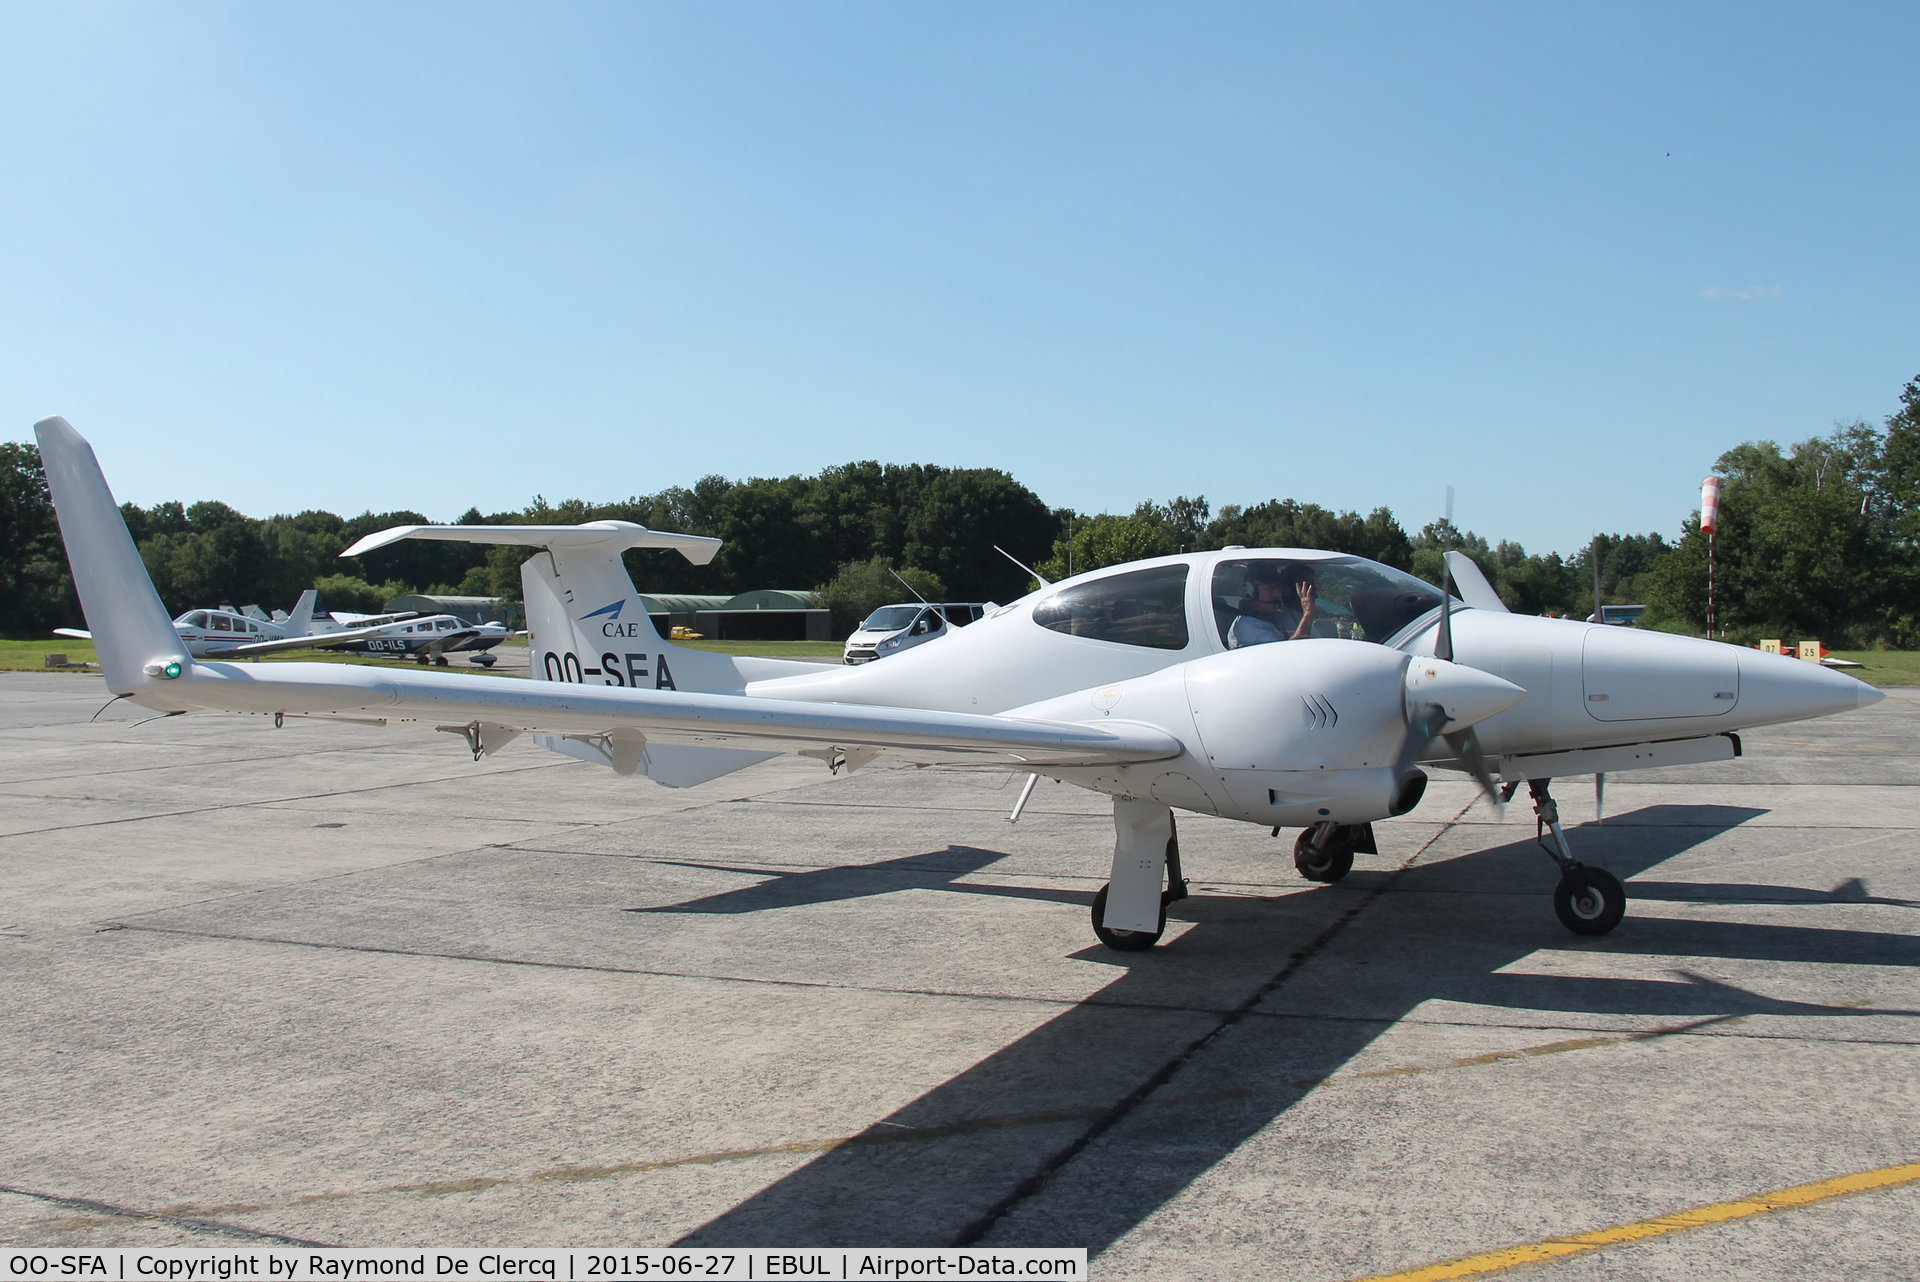 OO-SFA, 2007 Diamond DA-42 Twin Star C/N 42.340, Taxiing out at Ursel Avia 2015.